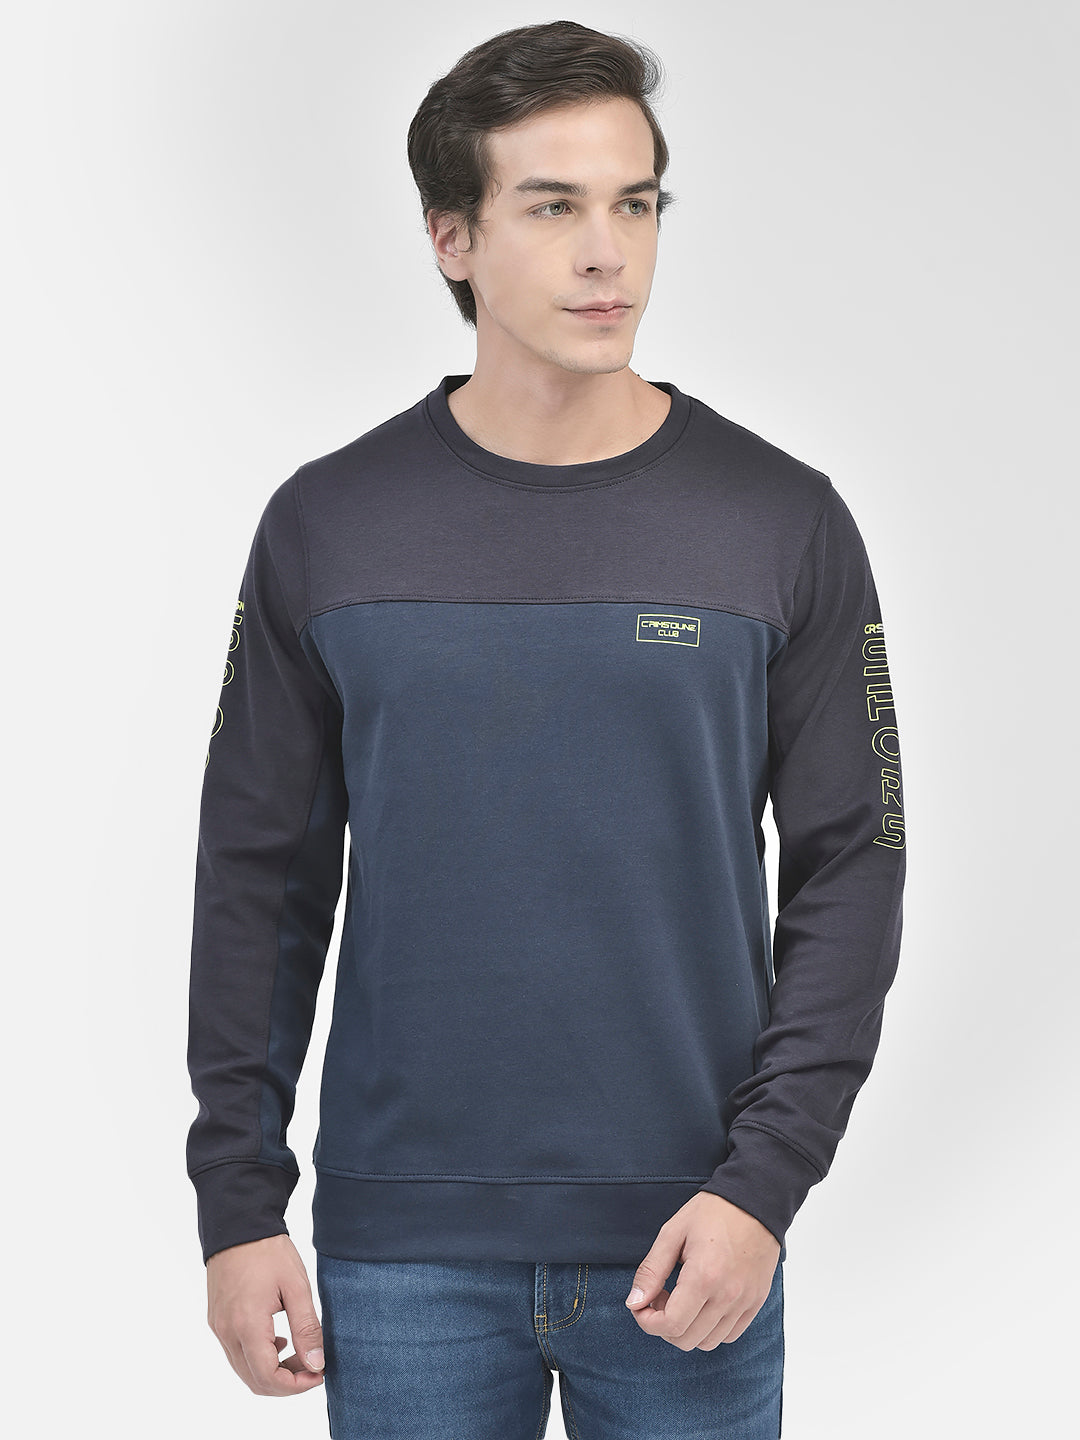 Navy Blue Round Neck Sweatshirt-Men Sweatshirts-Crimsoune Club